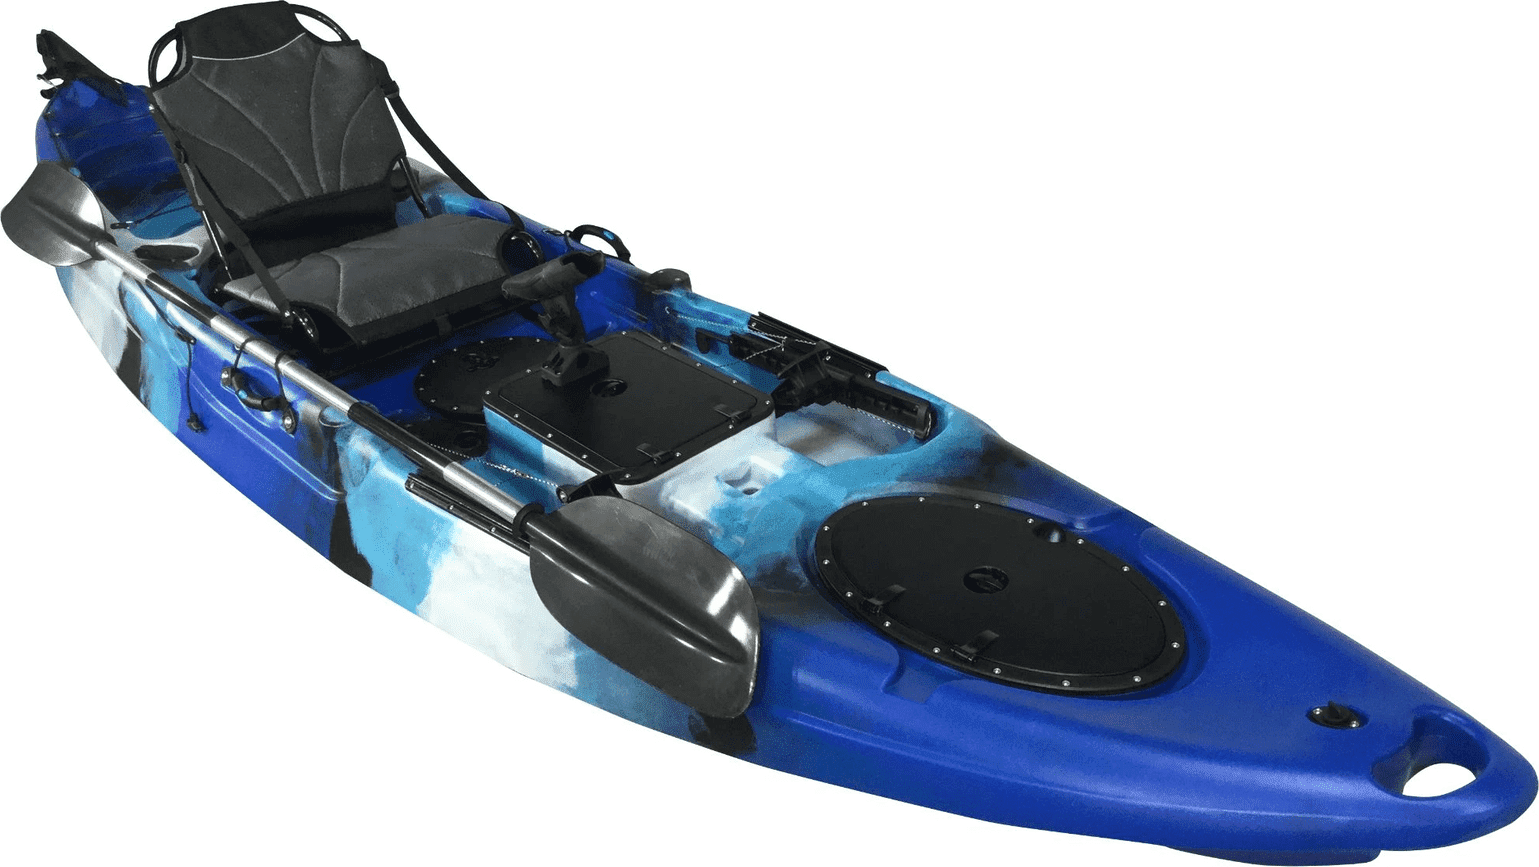 Blue Camo Fishing Kayak fishing kayak kayak for sale sea kayak